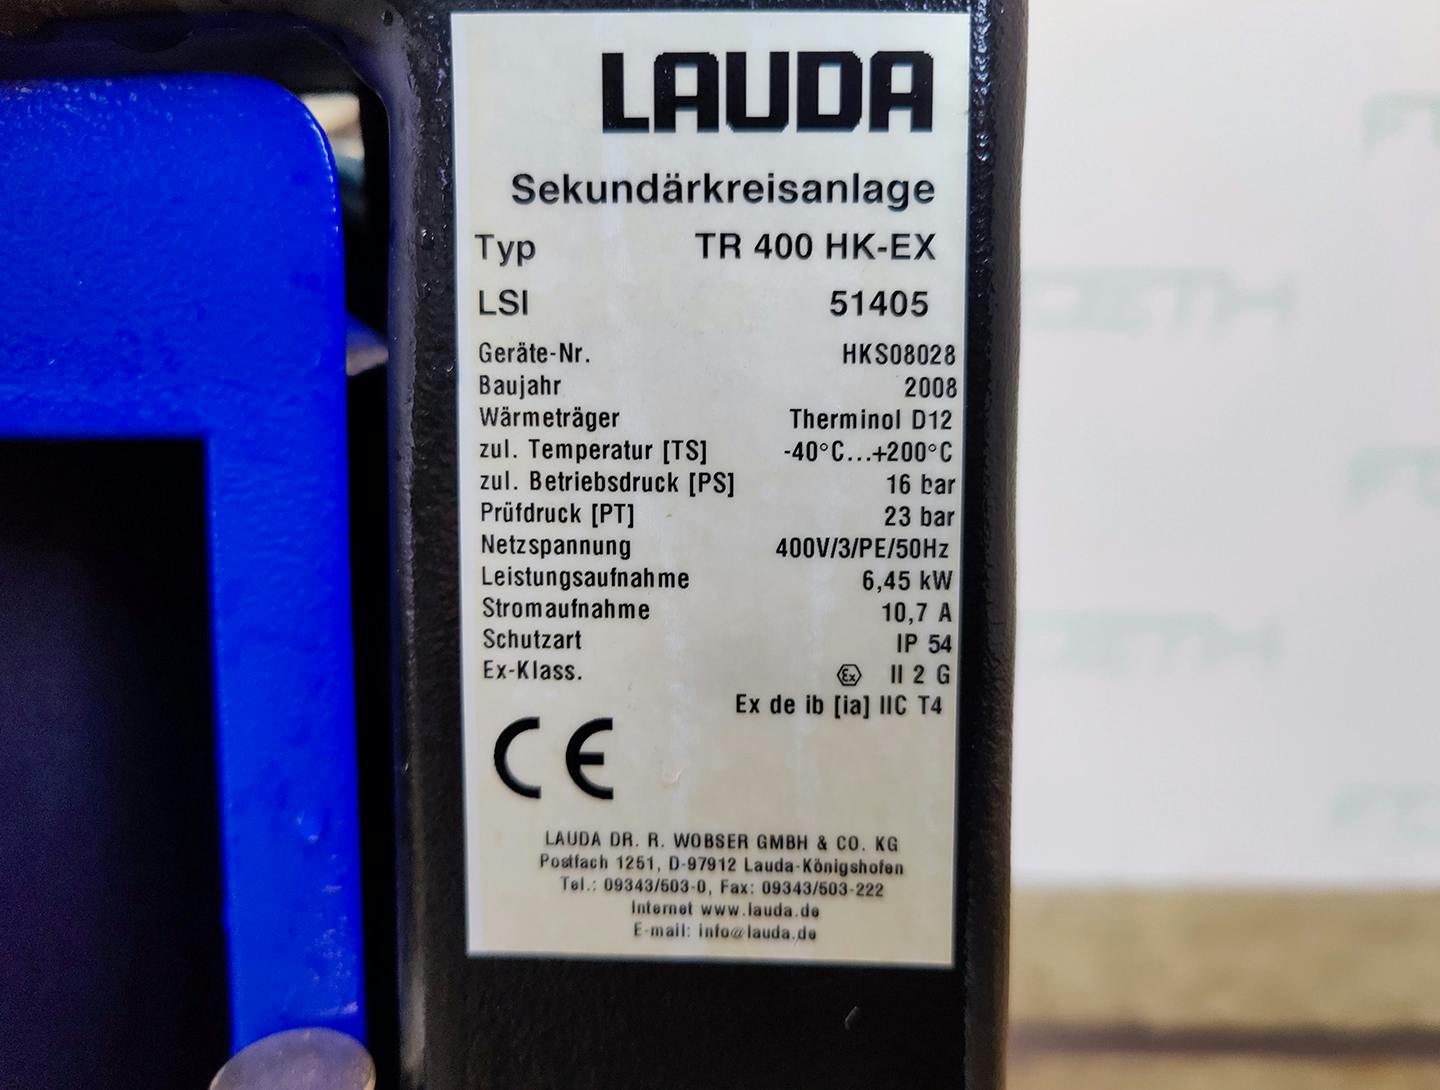 Lauda TR400 HK-EX "secondary circuit system" - Atemperador - image 6